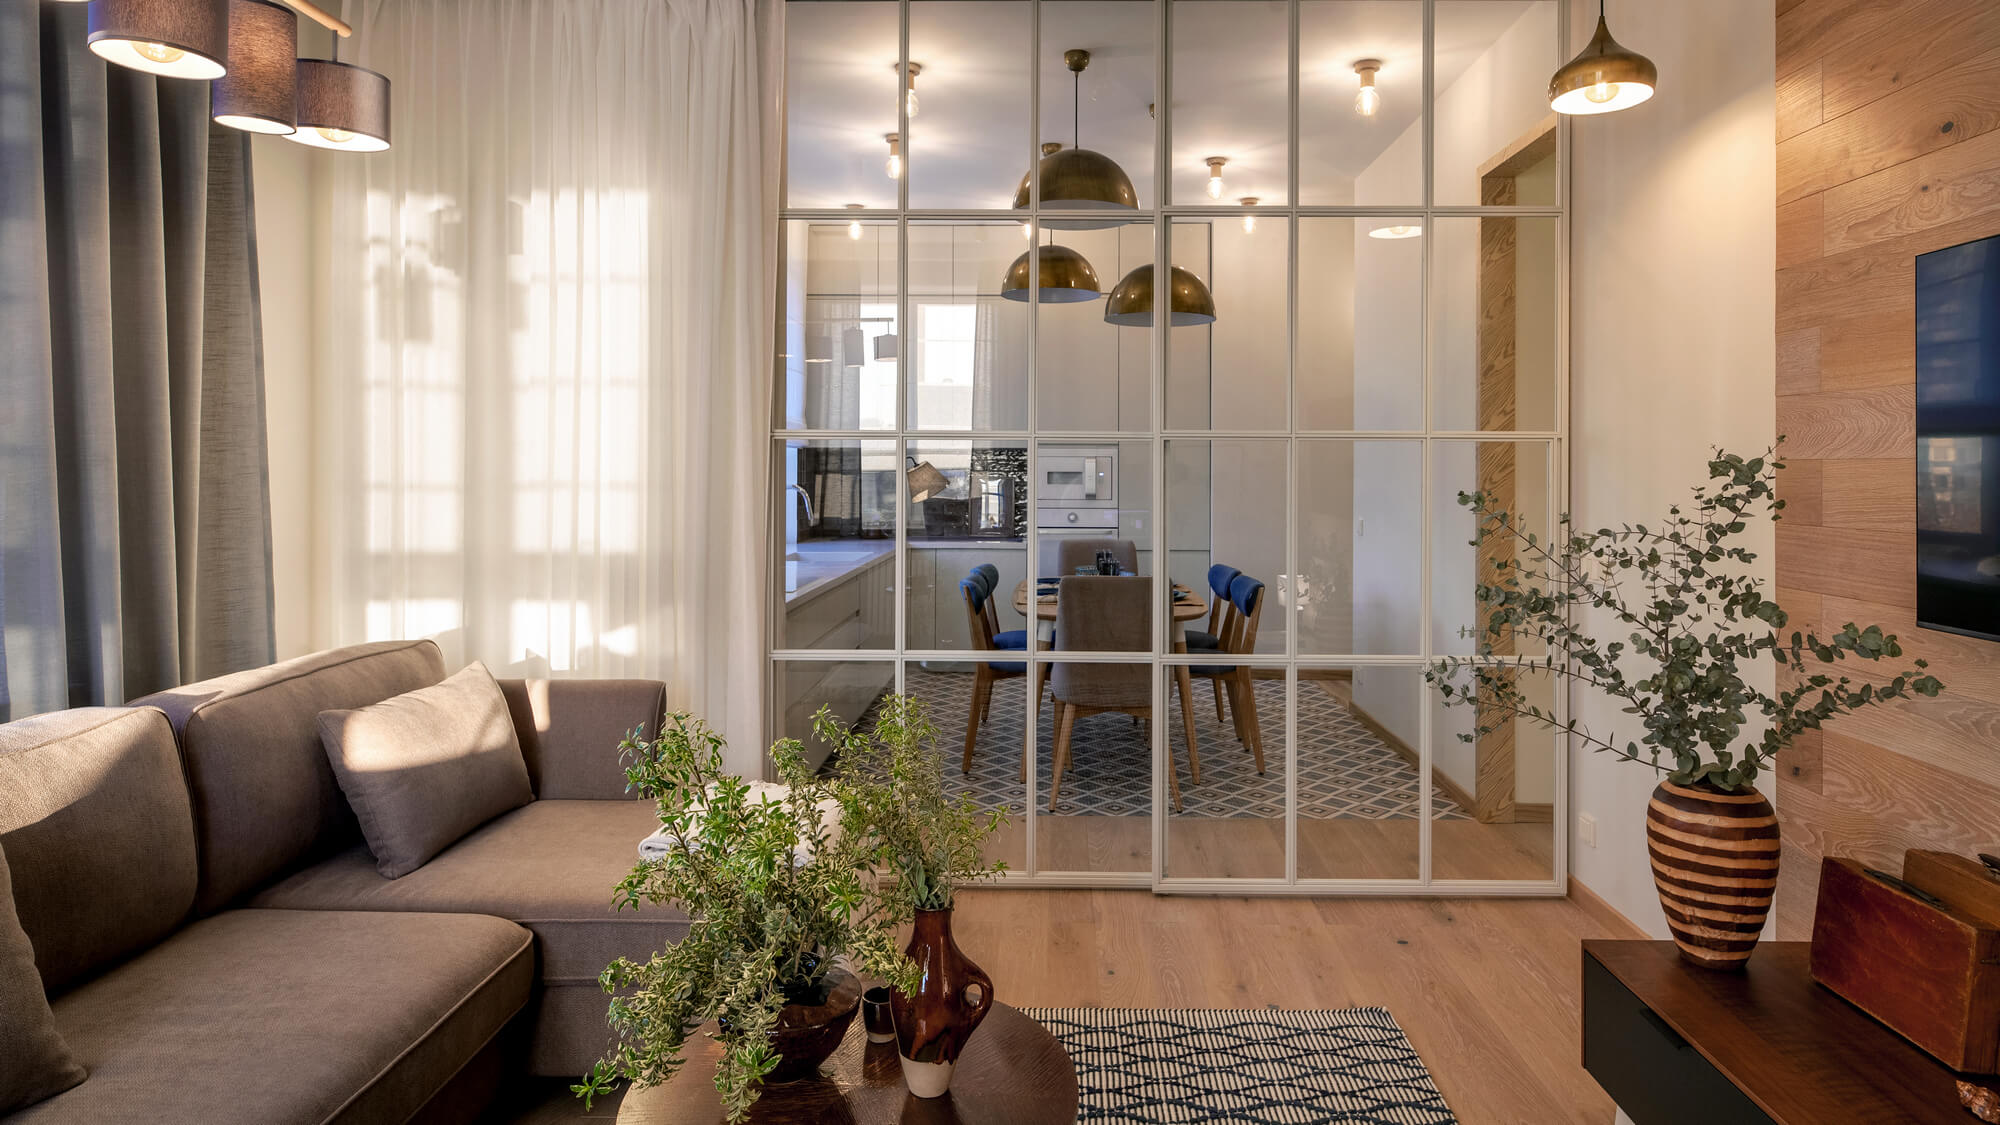 Квартира 67 м² для супружеской пары солидного возраста в ЖК «Счастье»: фото NaN